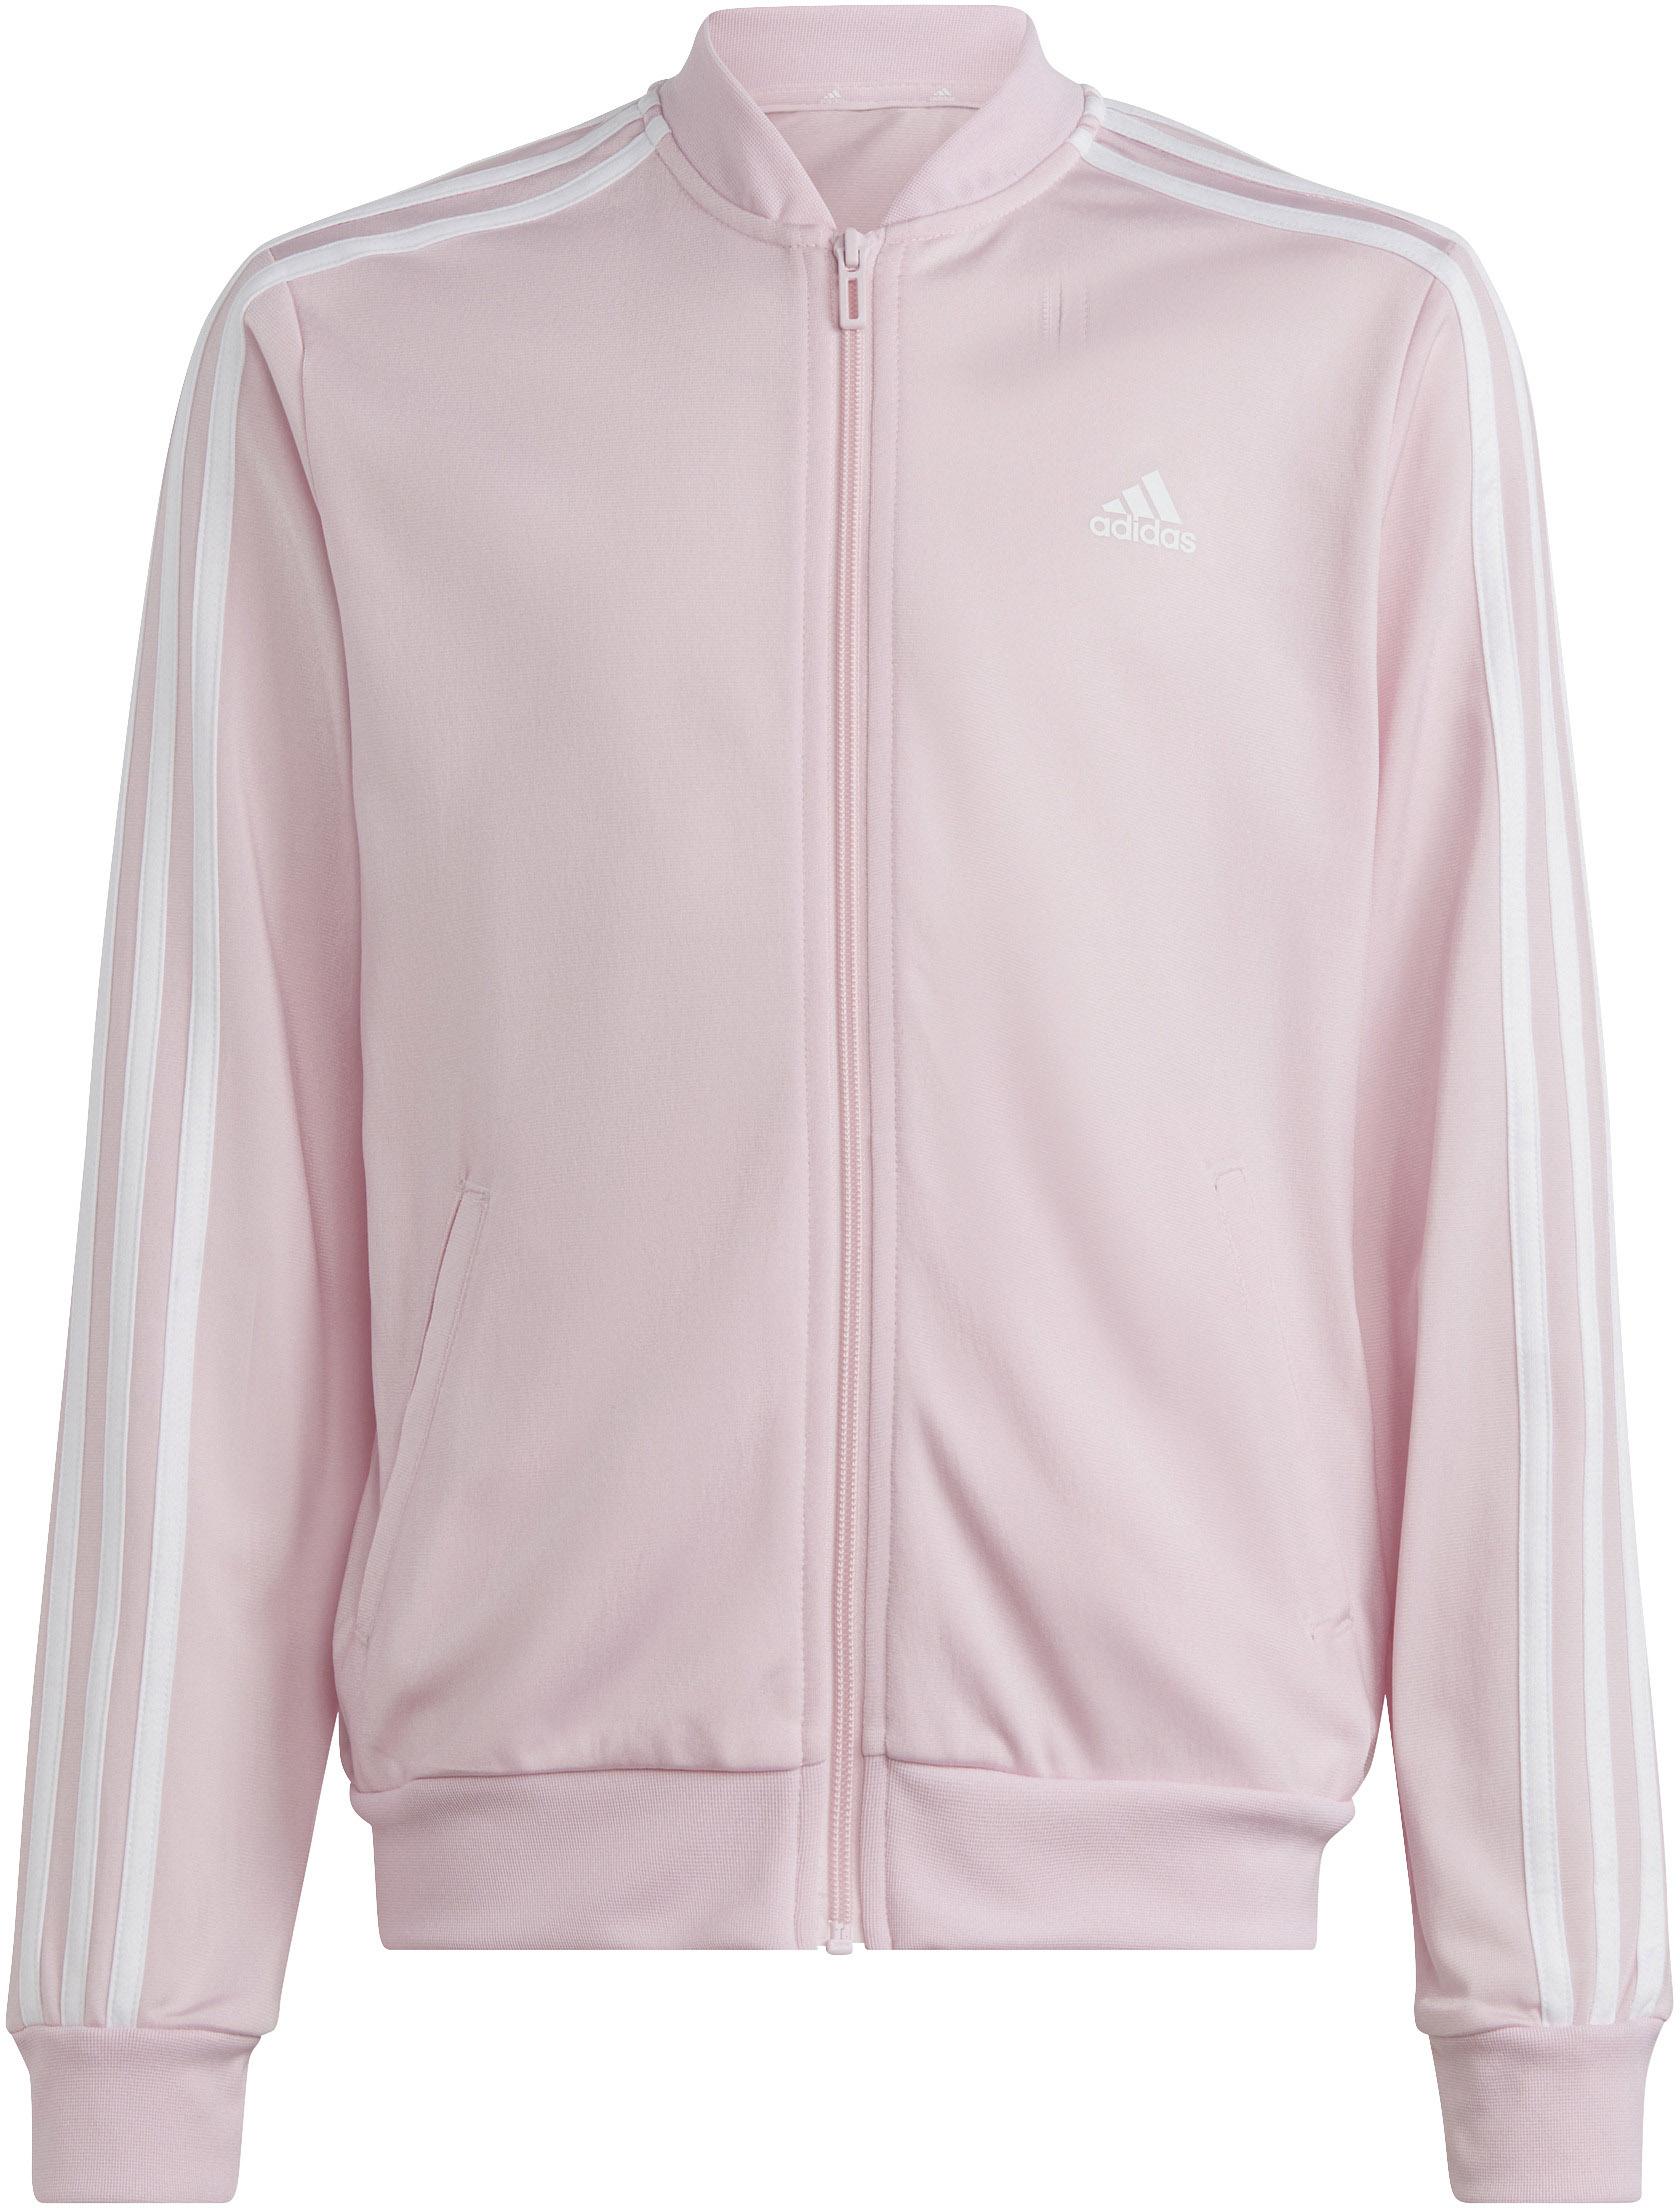 Adidas Trainingsanzug Mädchen clear SportScheck von Online kaufen im pink-semi fuchsia-white lucid Shop